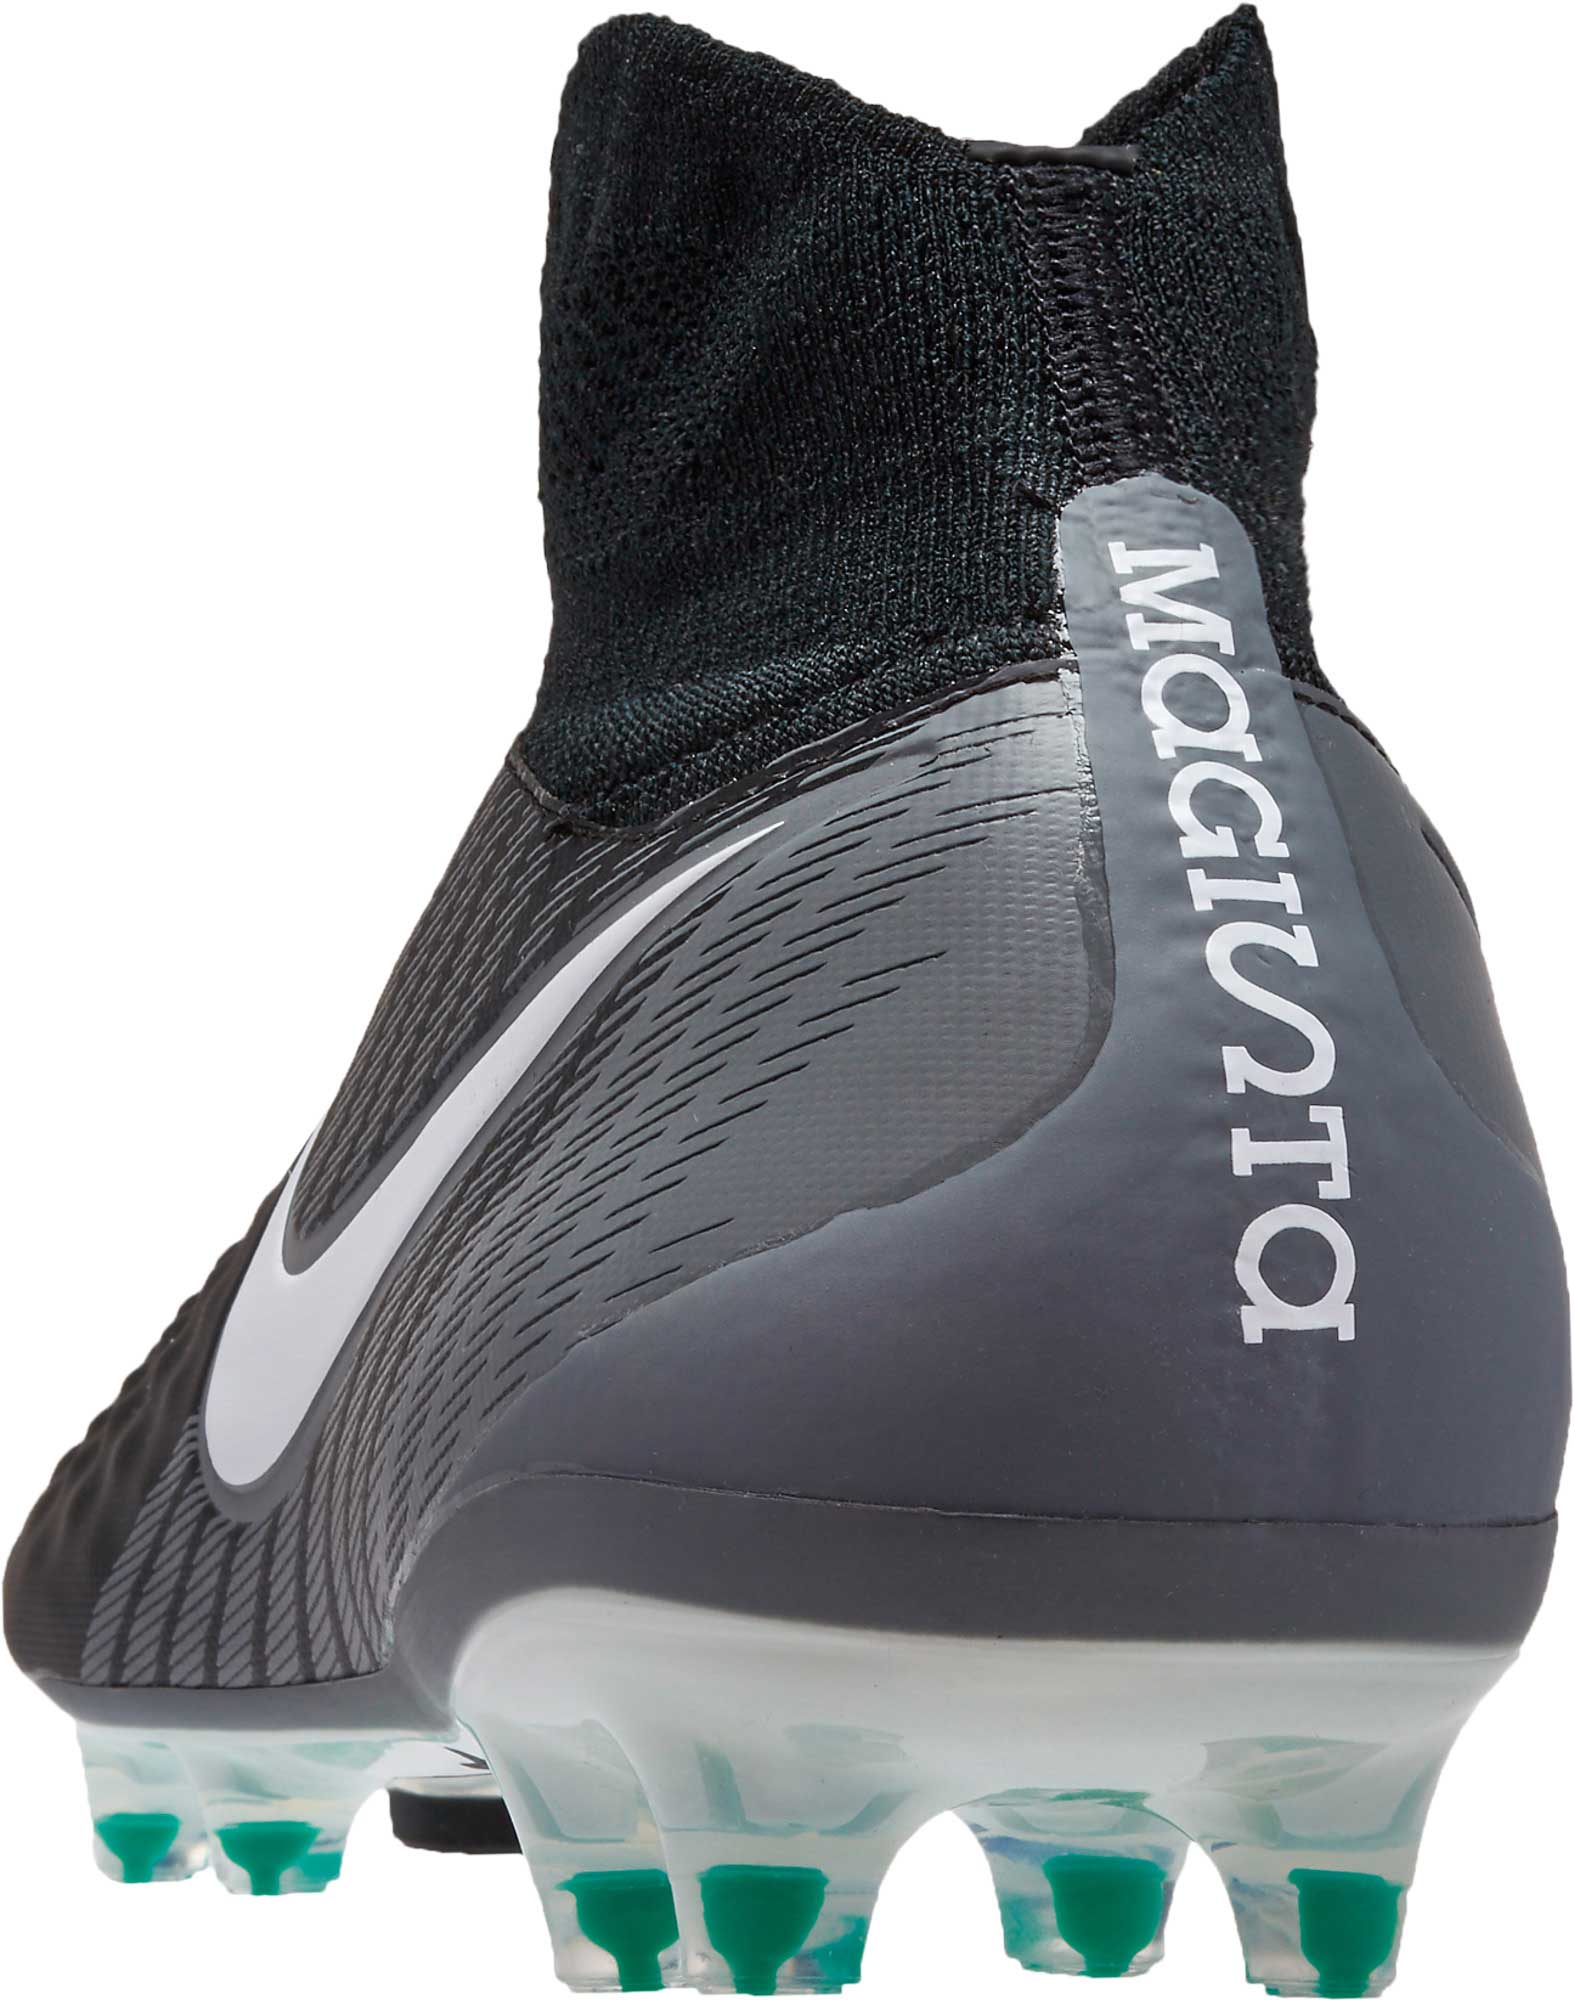 Nike Magista Orden II FG - Black and White Magista Soccer ...